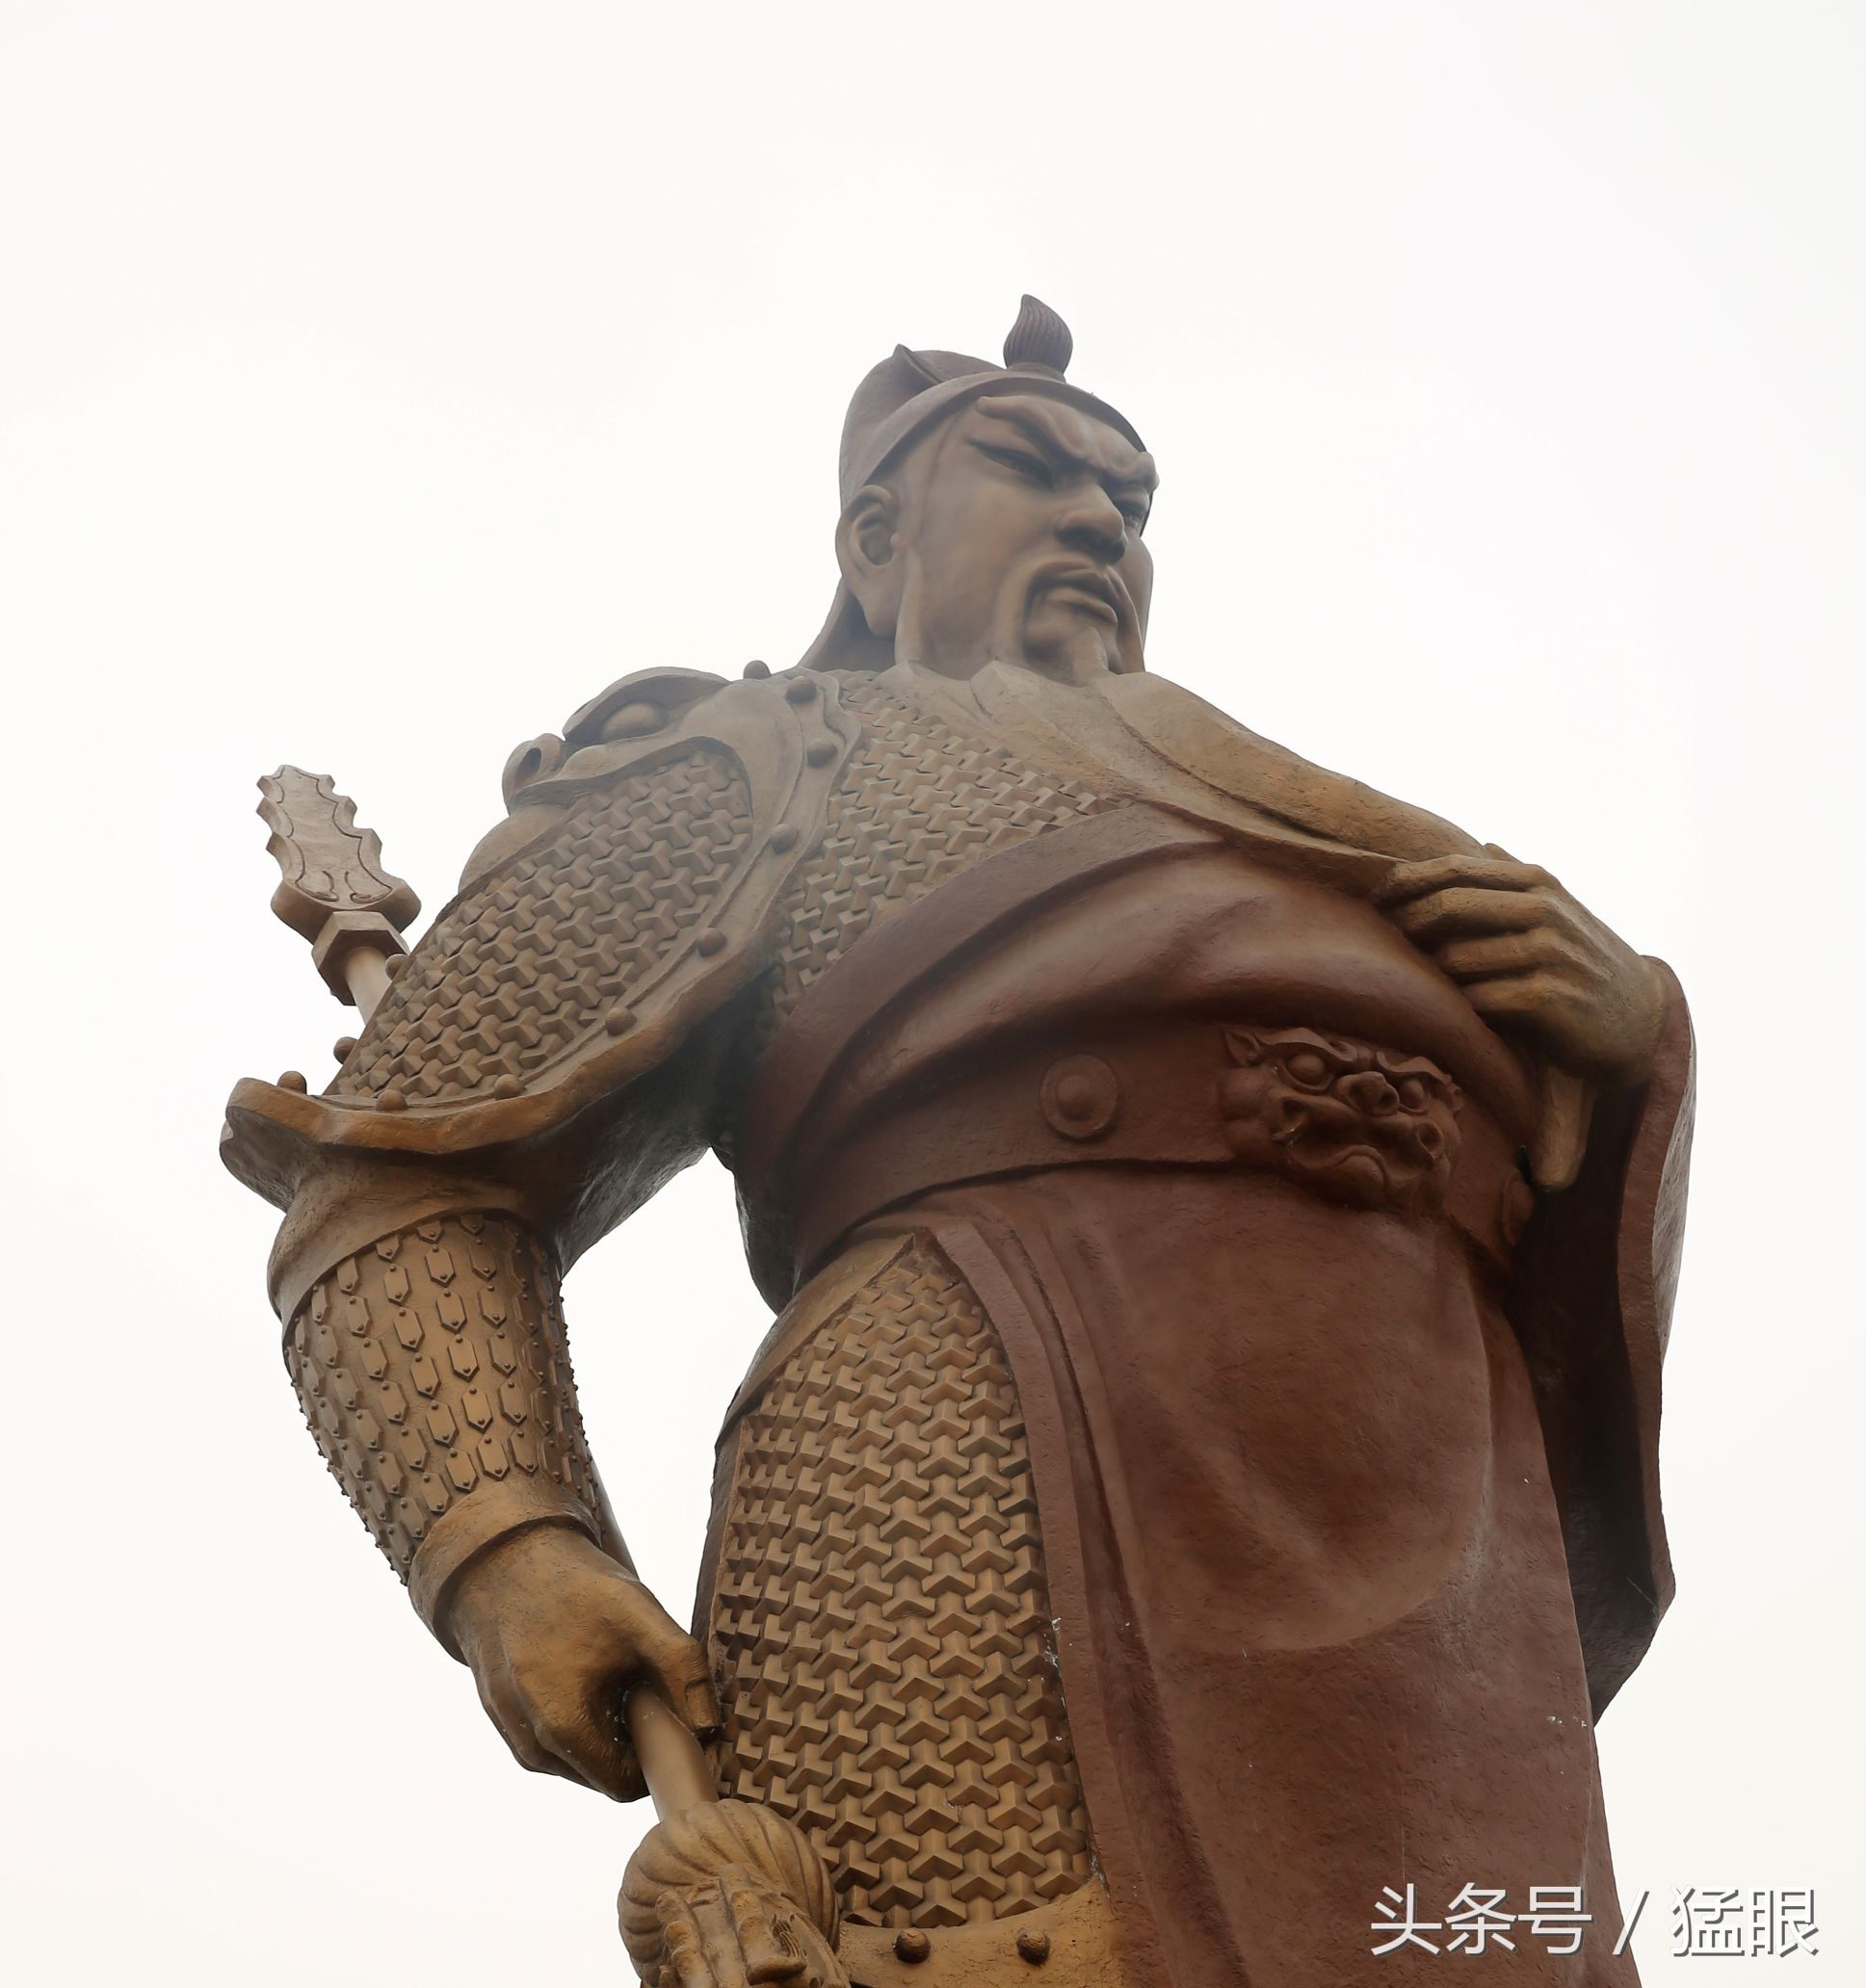 该雕塑为关公站像,青铜铸造,身着半铠甲半战袍,手提青龙偃月刀,威风